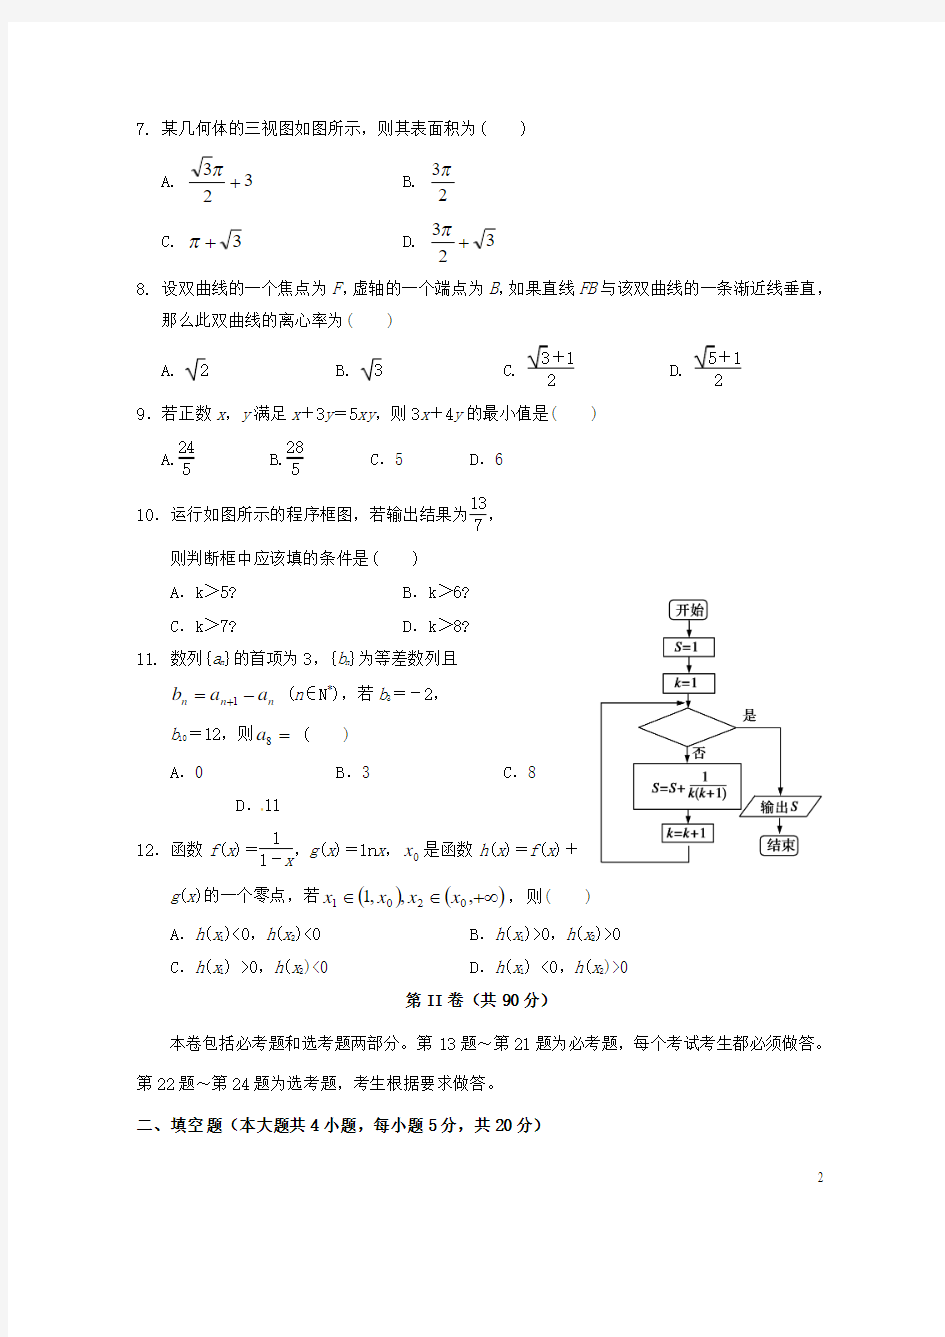 海南省乐东县思源实验高级中学高三数学第七次模拟试题文(实验班)